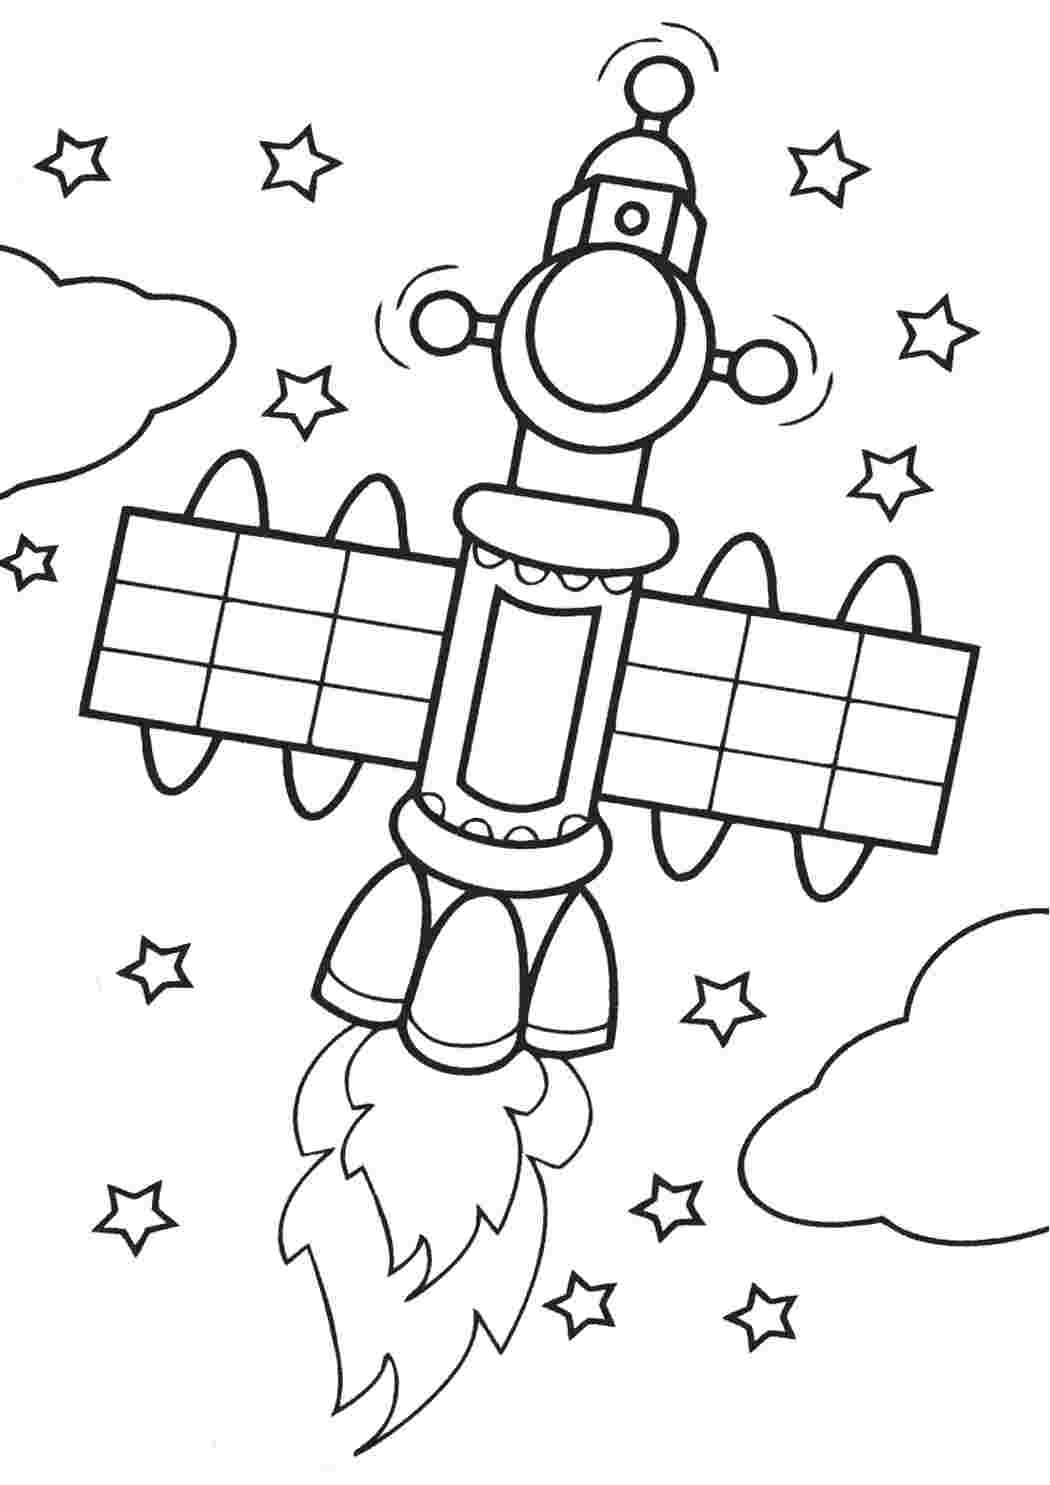 Раскраска космос 5 лет. Раскраска. В космосе. Космос раскраска для детей. Раскраска для малышей. Космос. Раскраска на тему космос для детей.